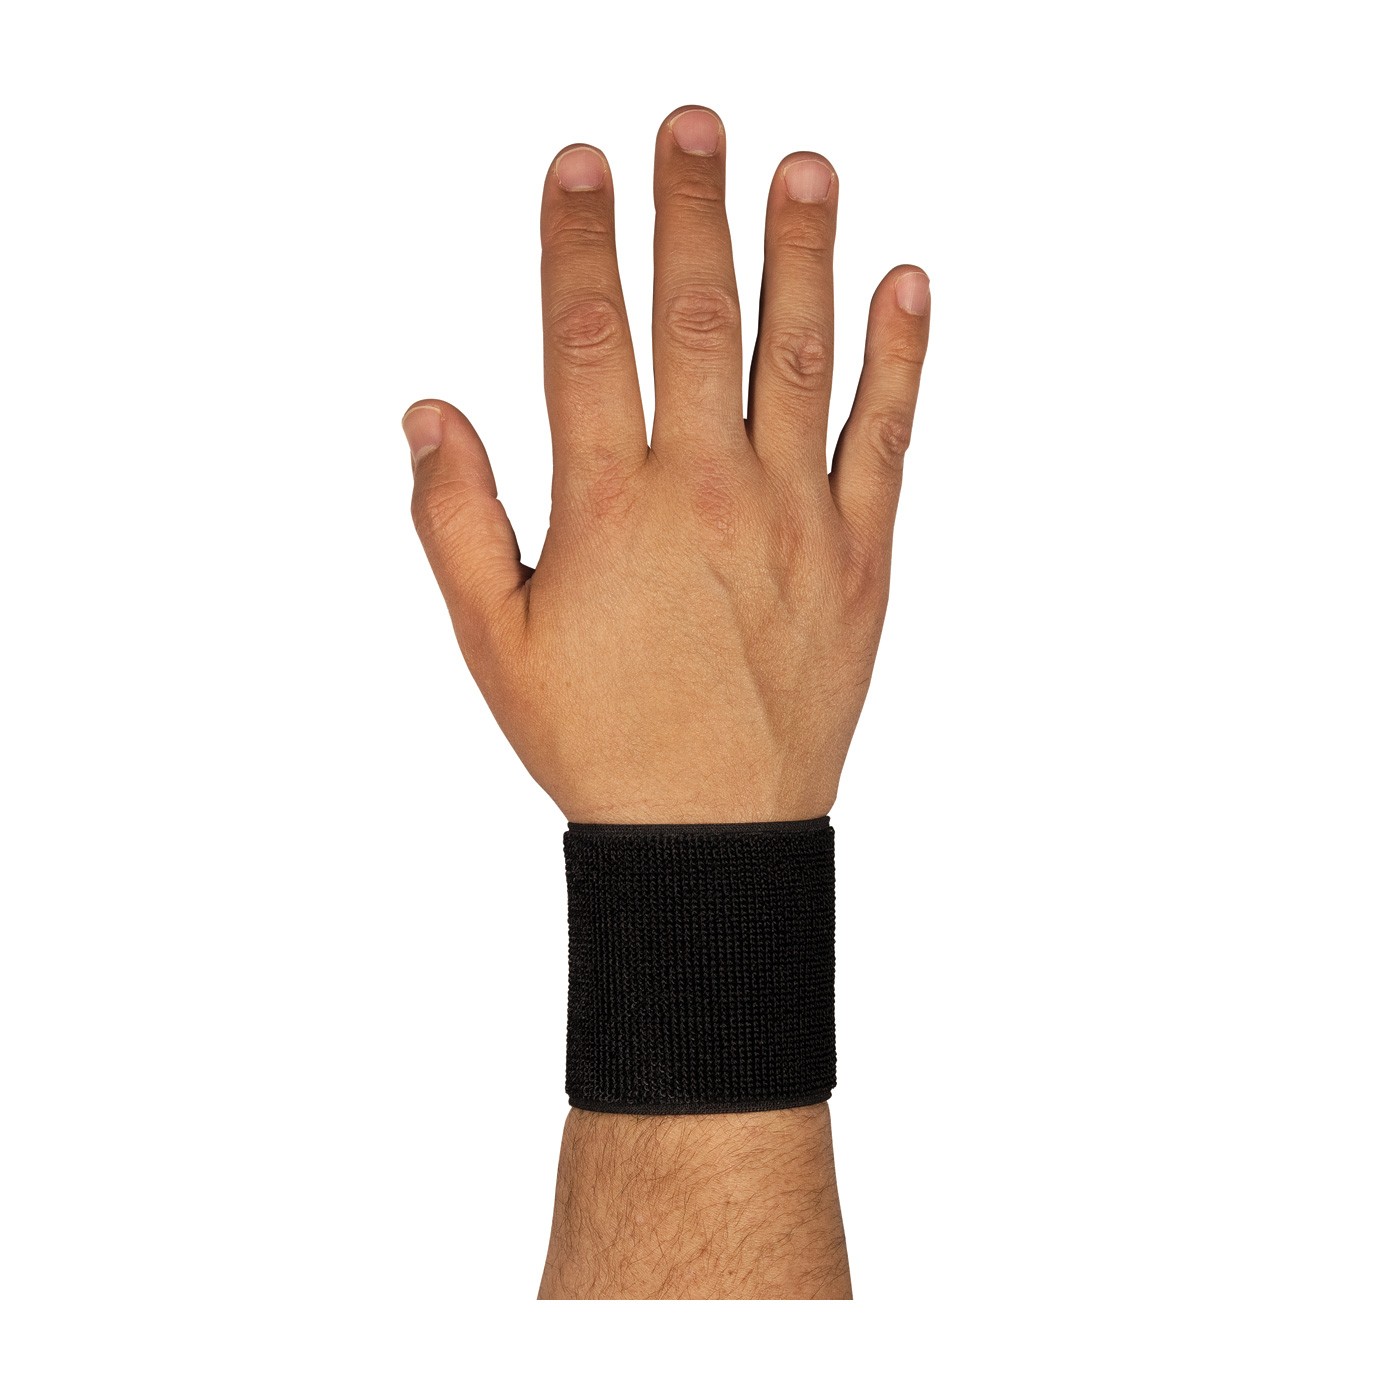 Wrist Support w/ Stays, Lge 7-7.5", Terry/Neoprene, Hook & Loop Closure